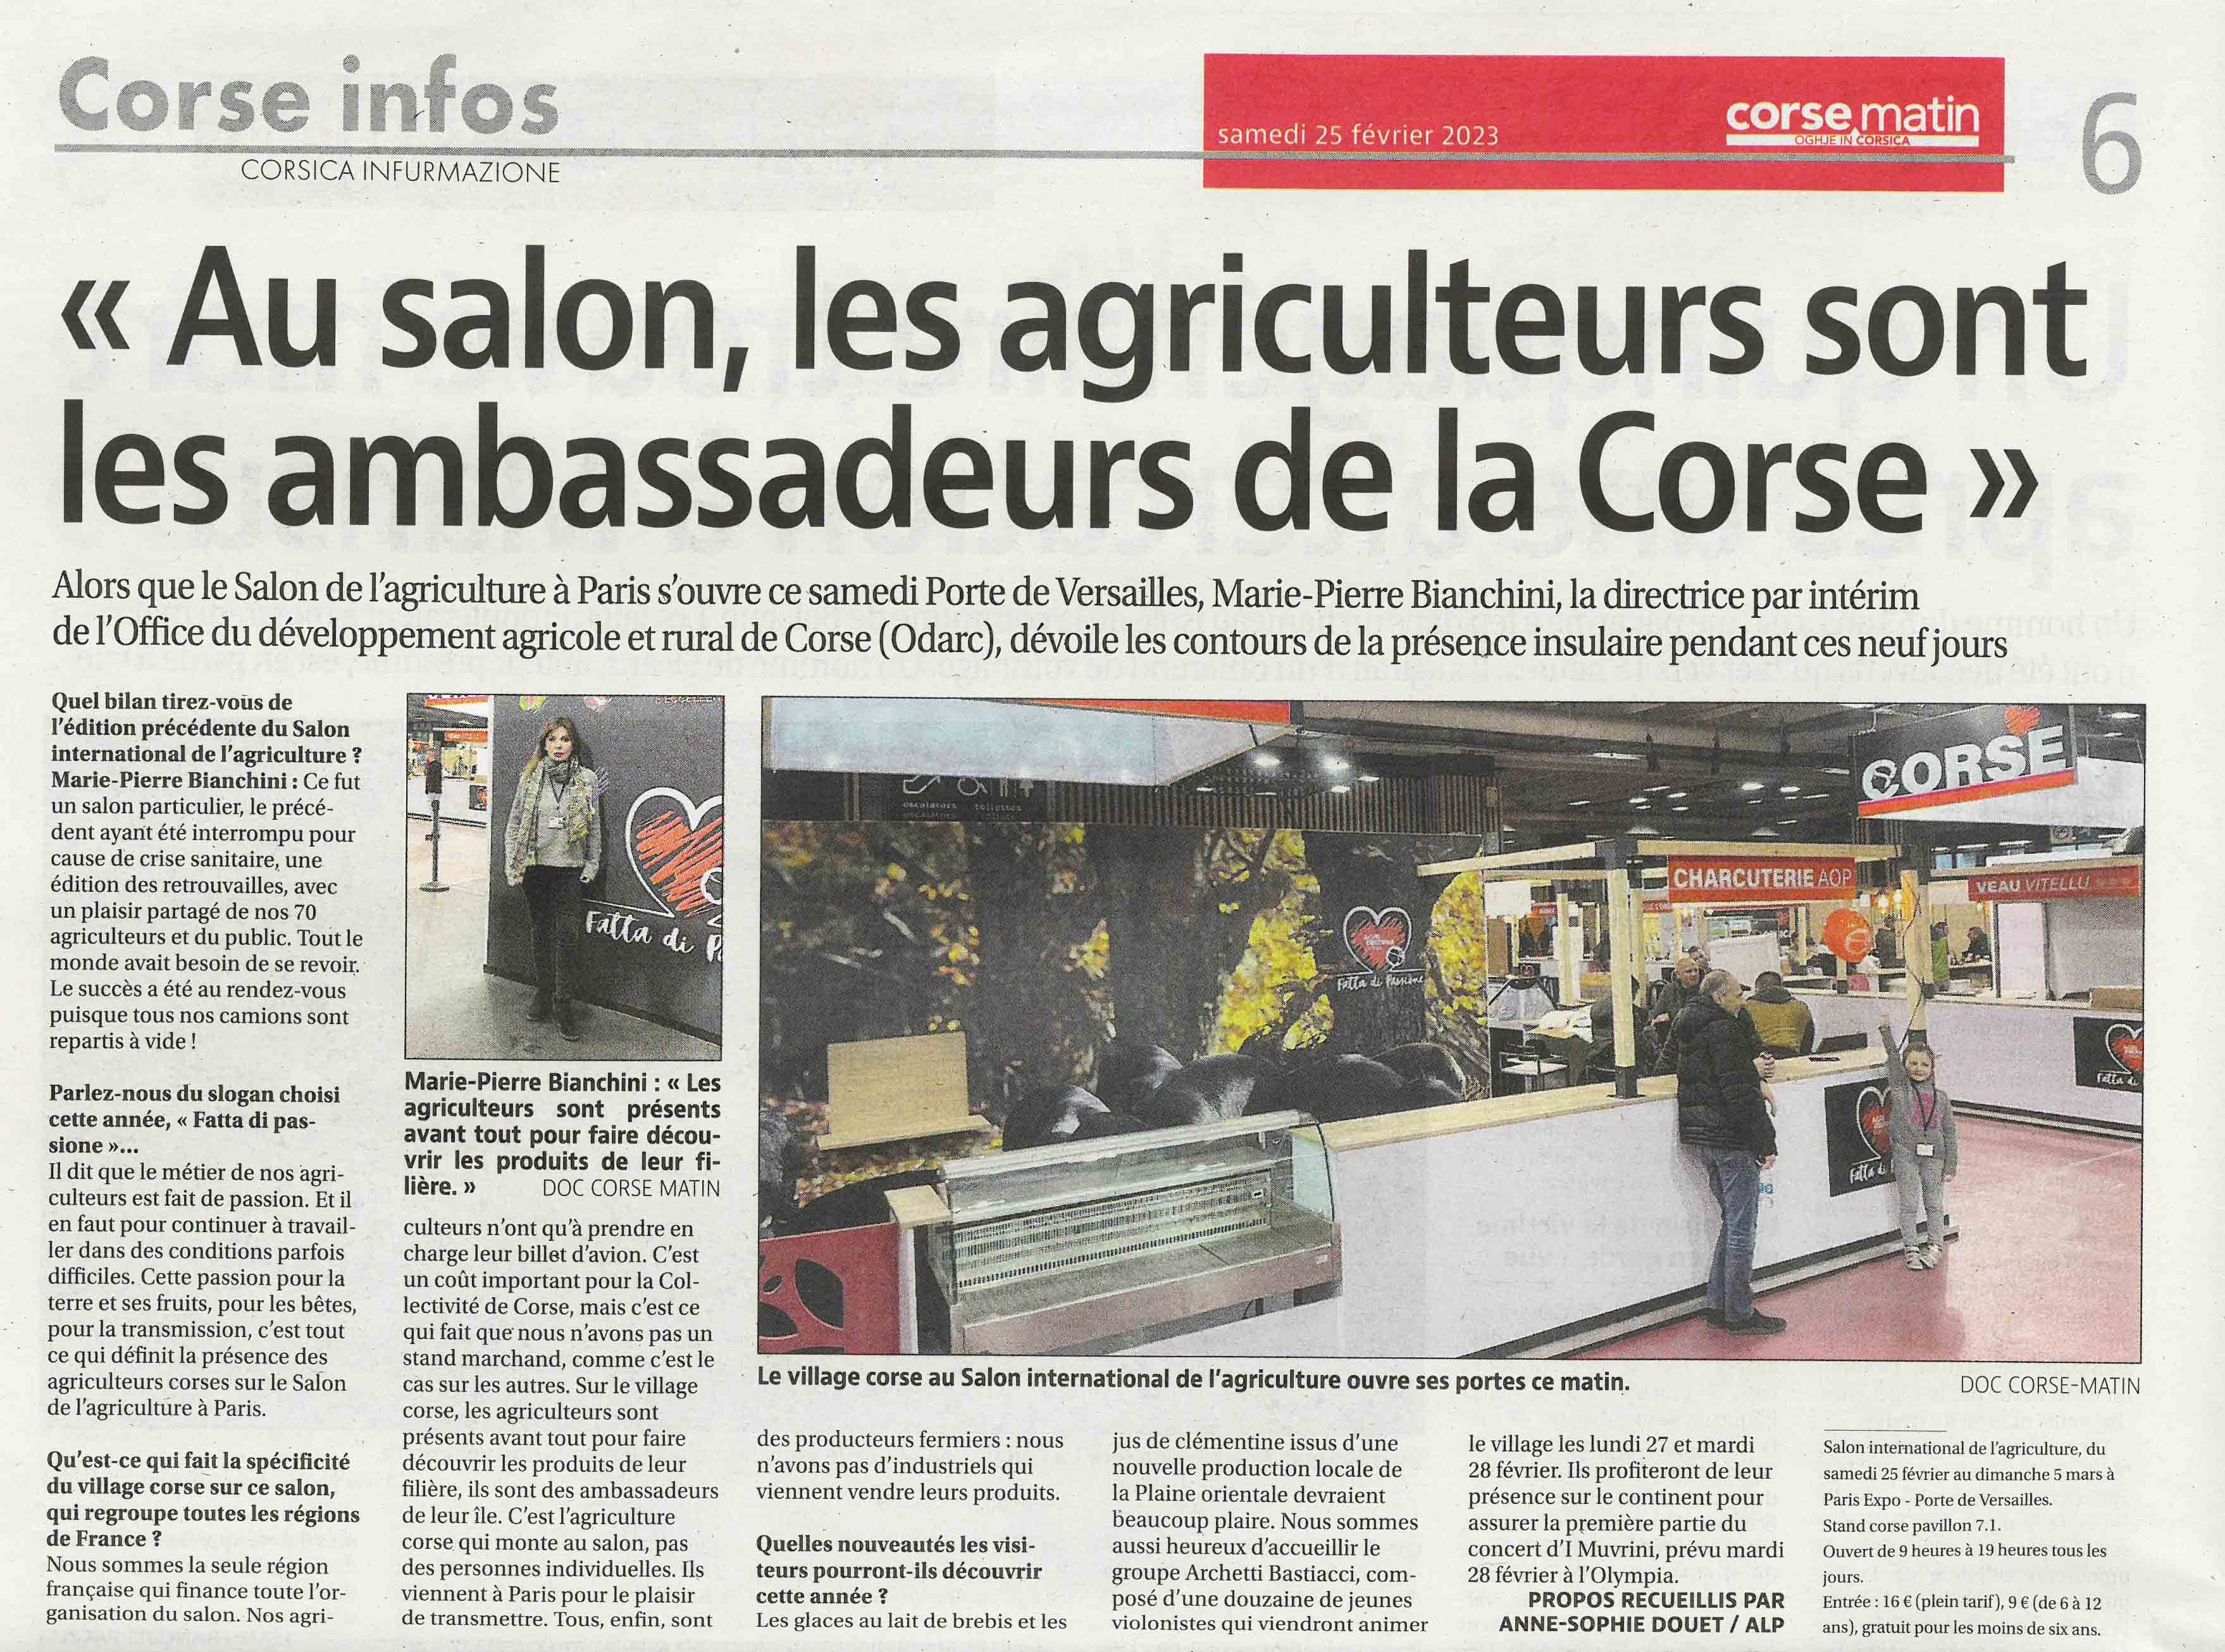 La Corse au Salon International de l'Agriculture